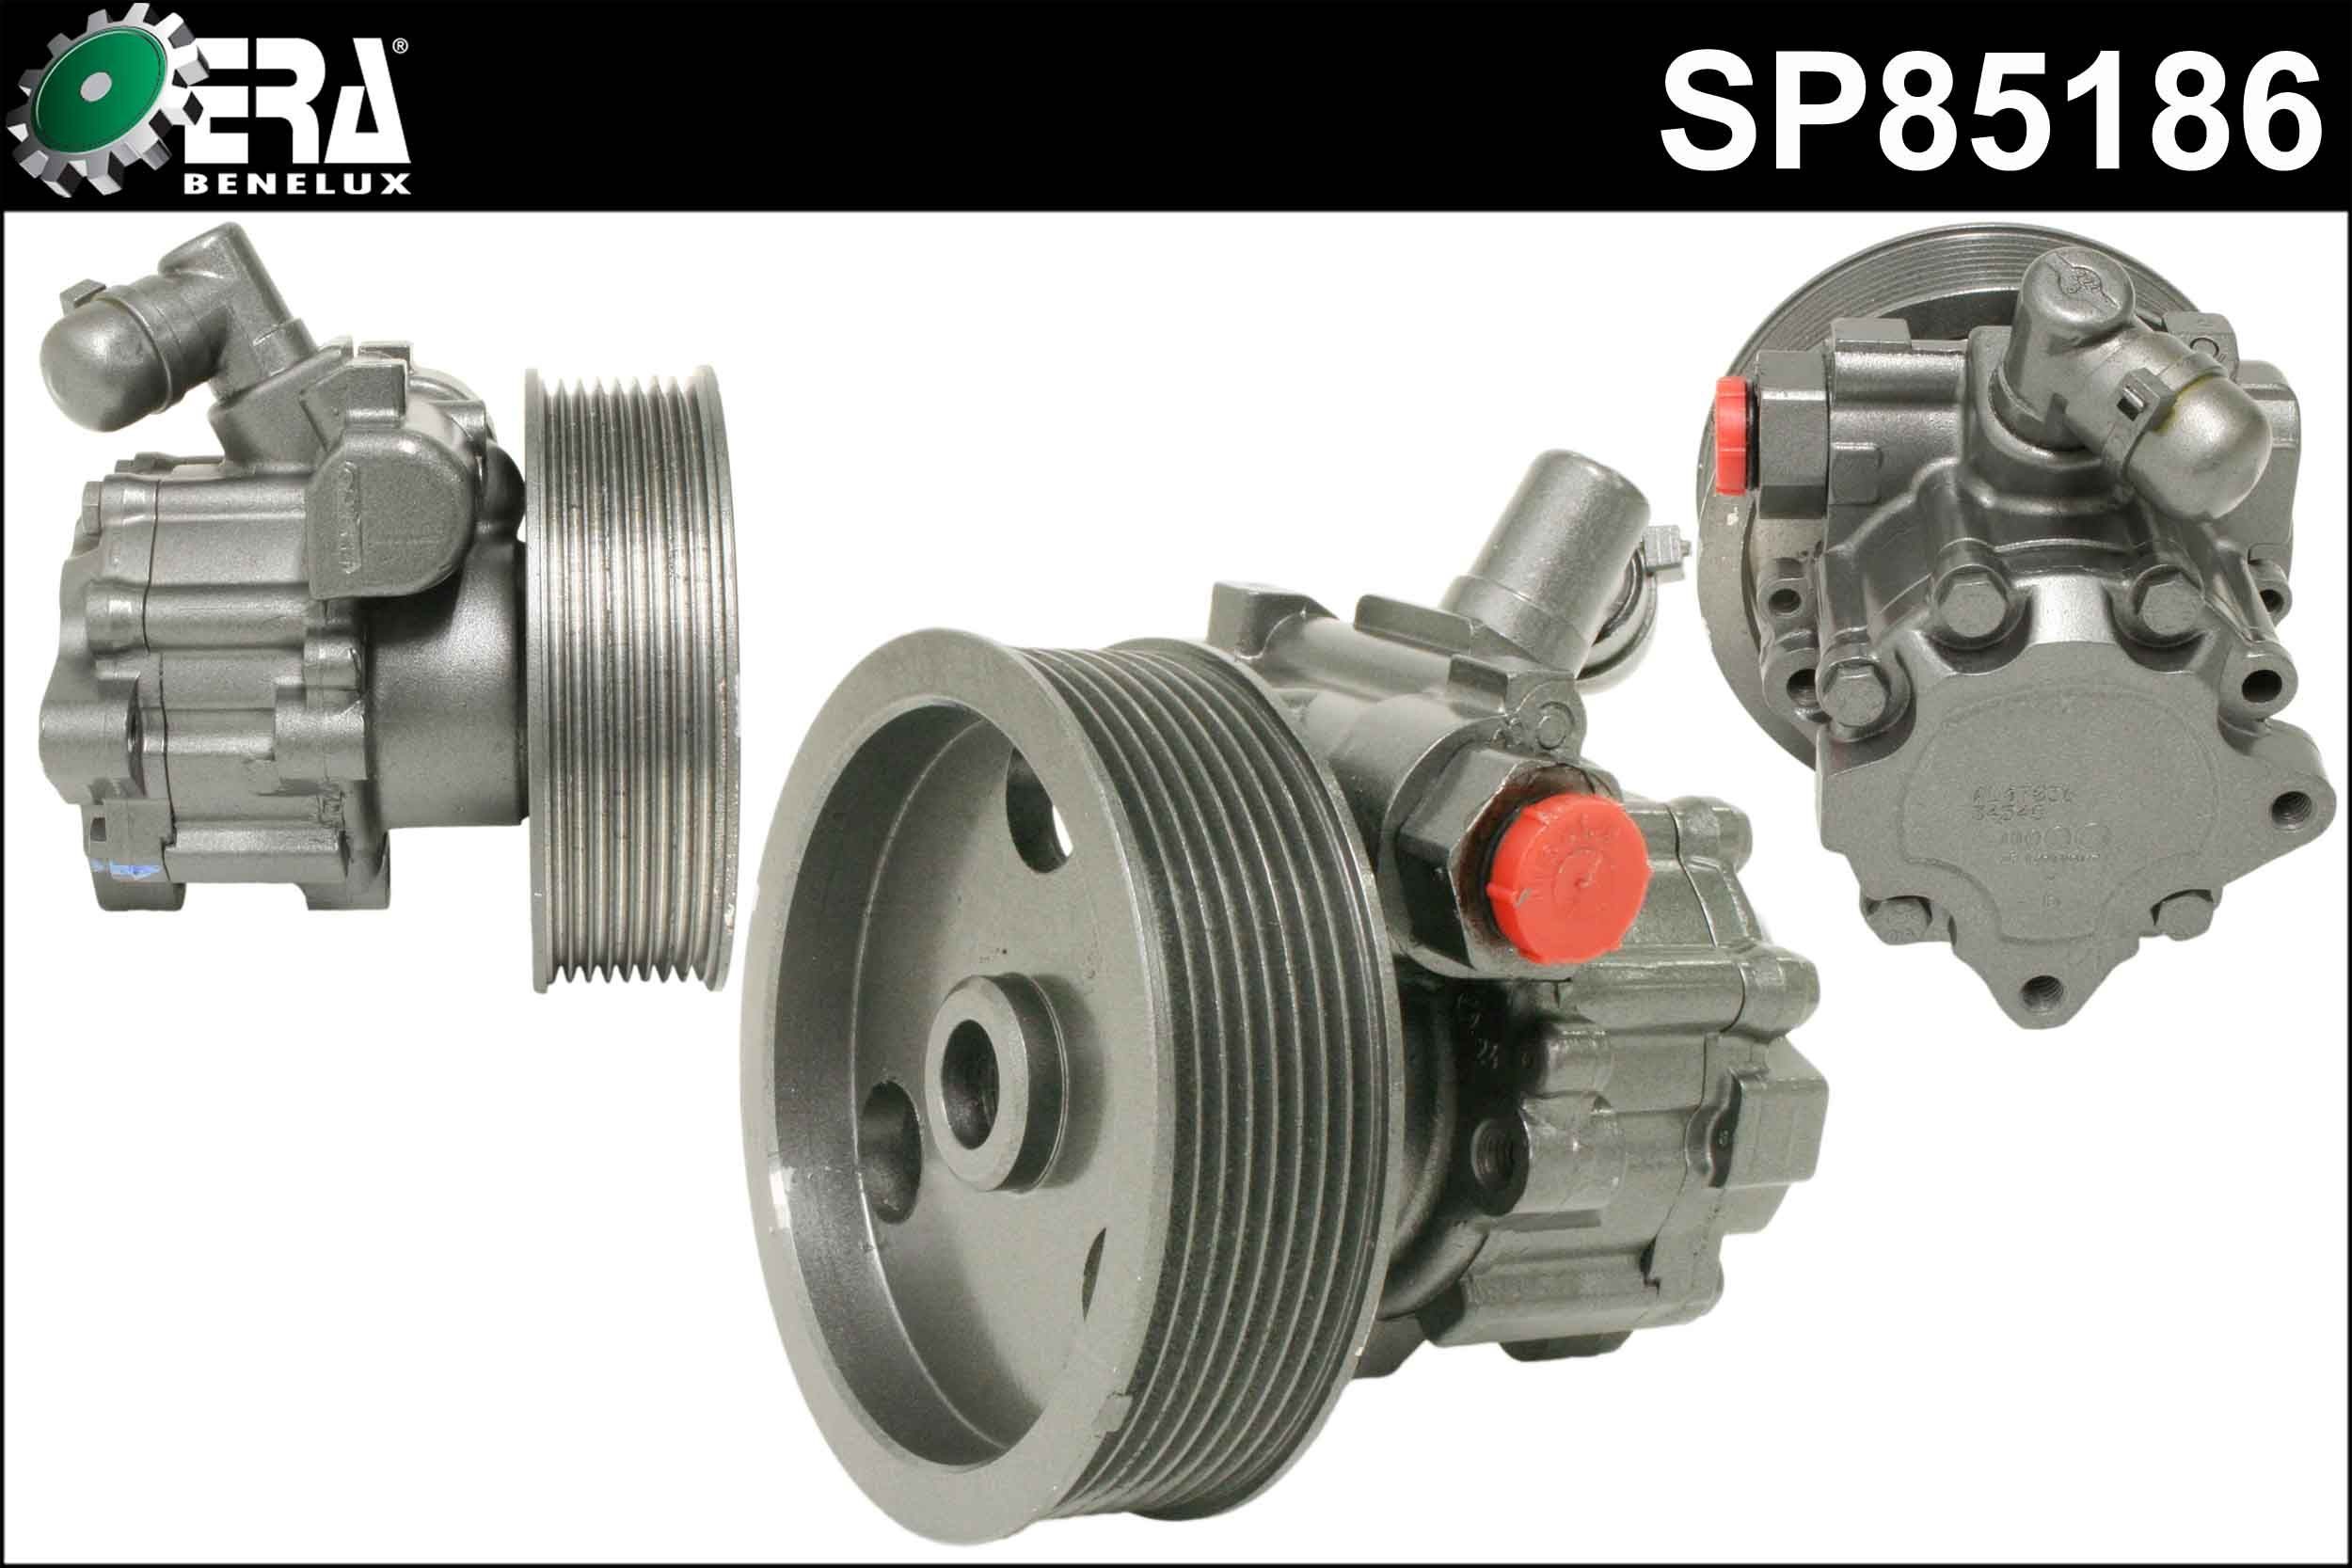 ERA Benelux SP85186 Steering pump W164 ML 320 CDI 3.0 4-matic 224 hp Diesel 2007 price